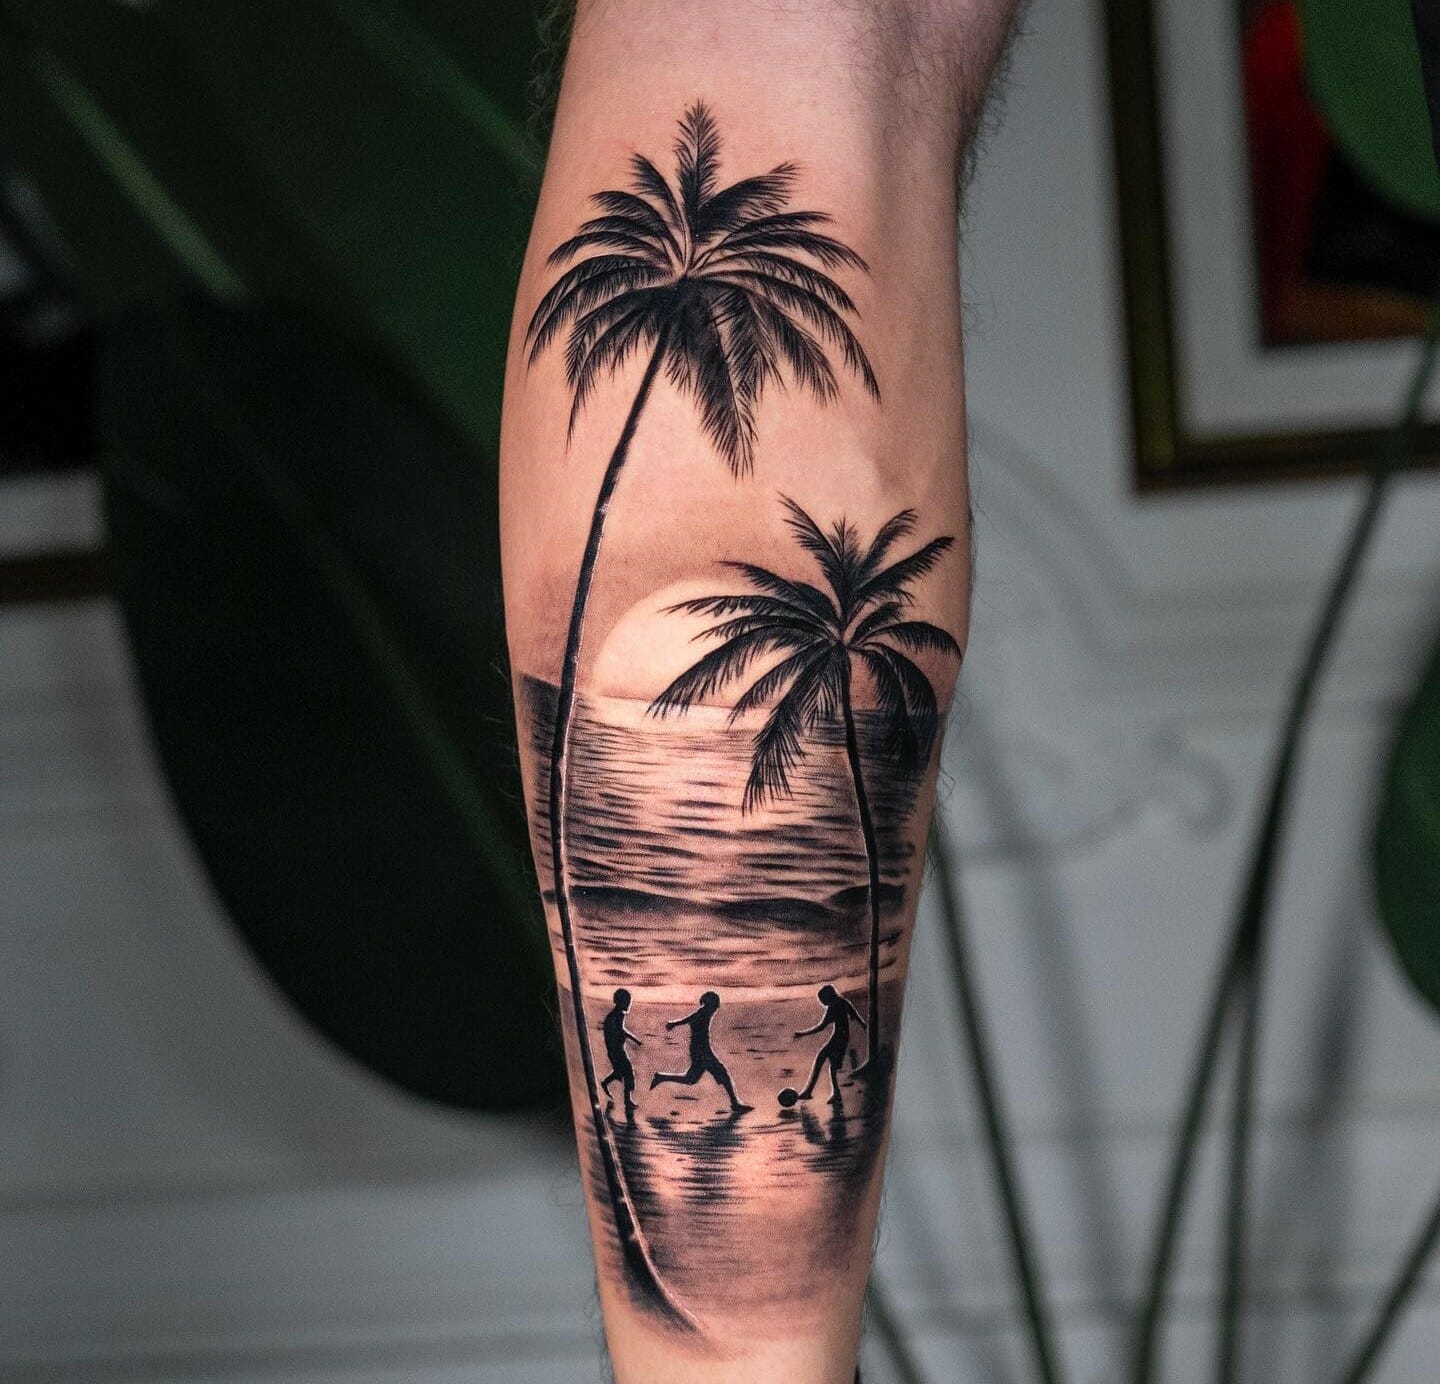 Beach scene tattoo designs